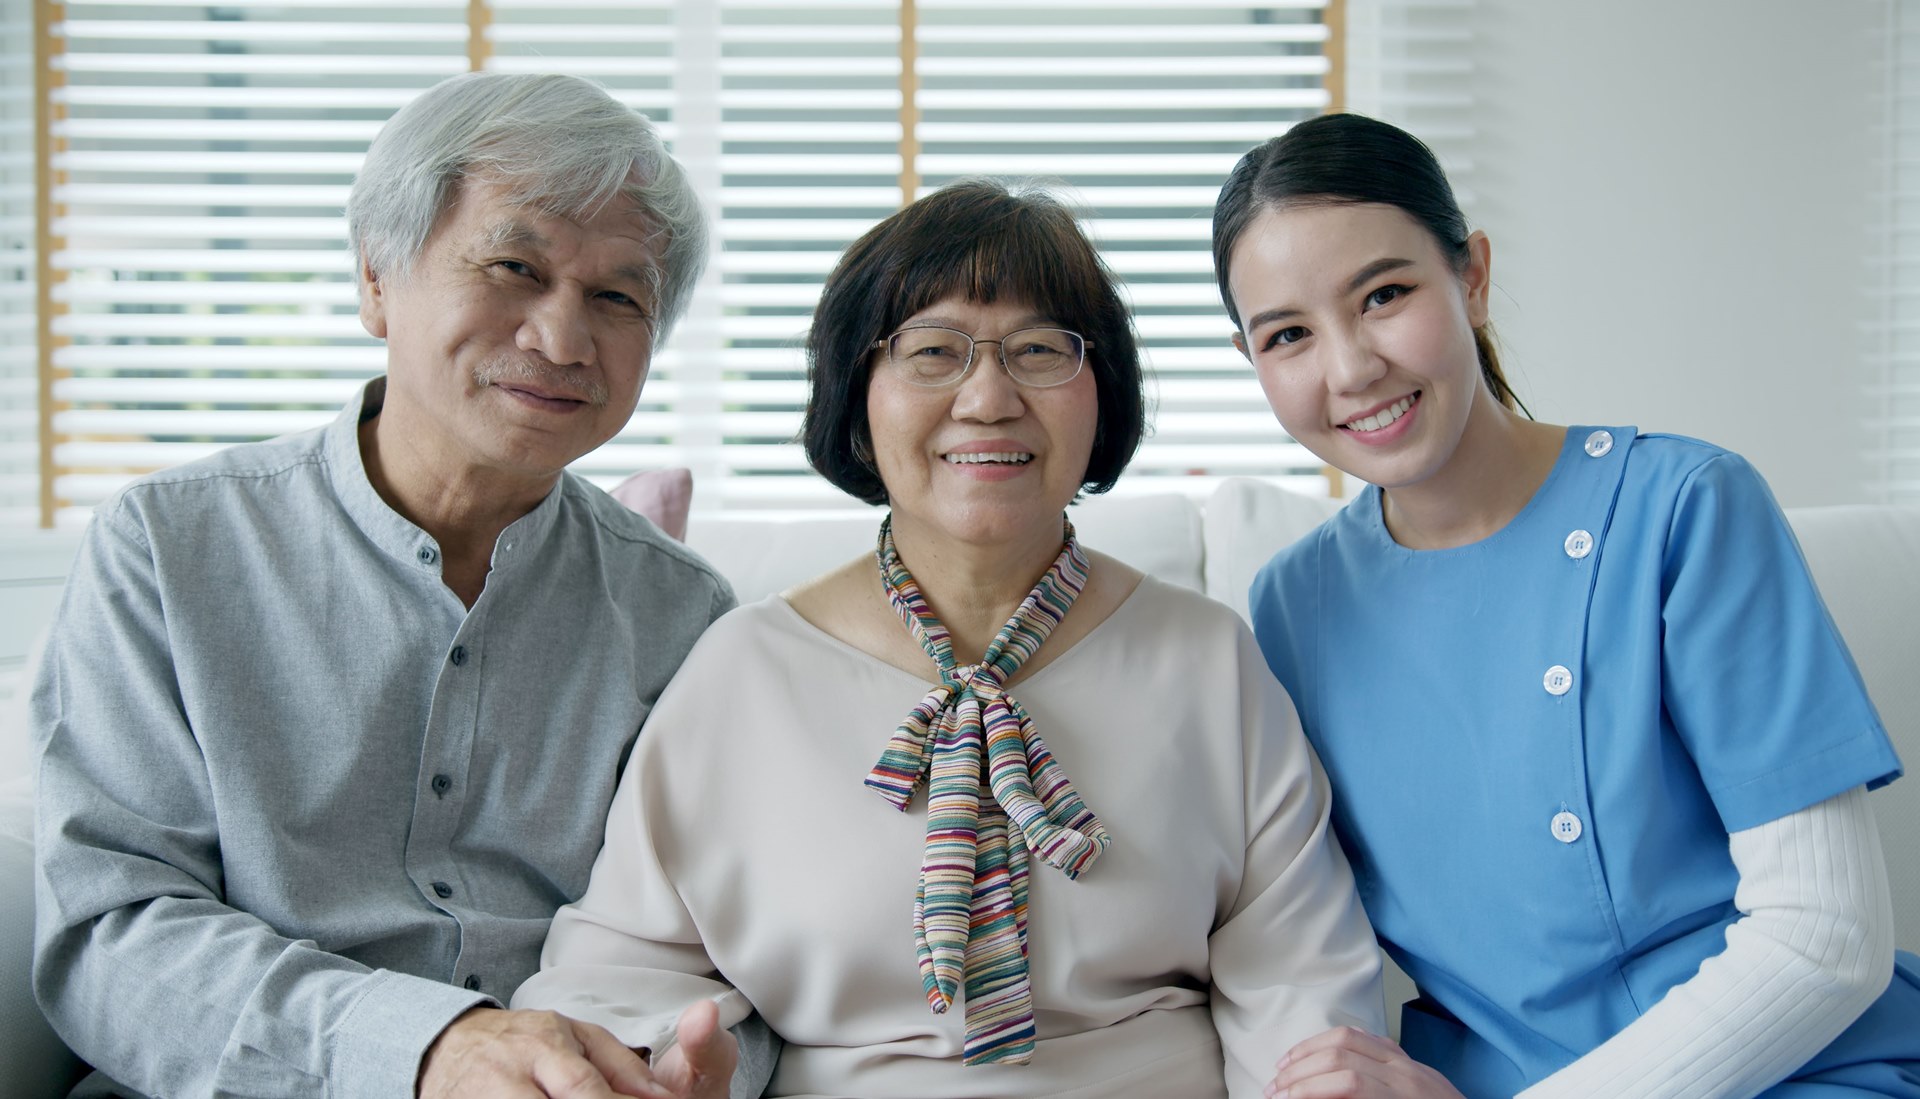 한국에는 없는 미국 생명보험, 인덱스 유니버셜 생명보험(Indexed Universal Life Insurance)